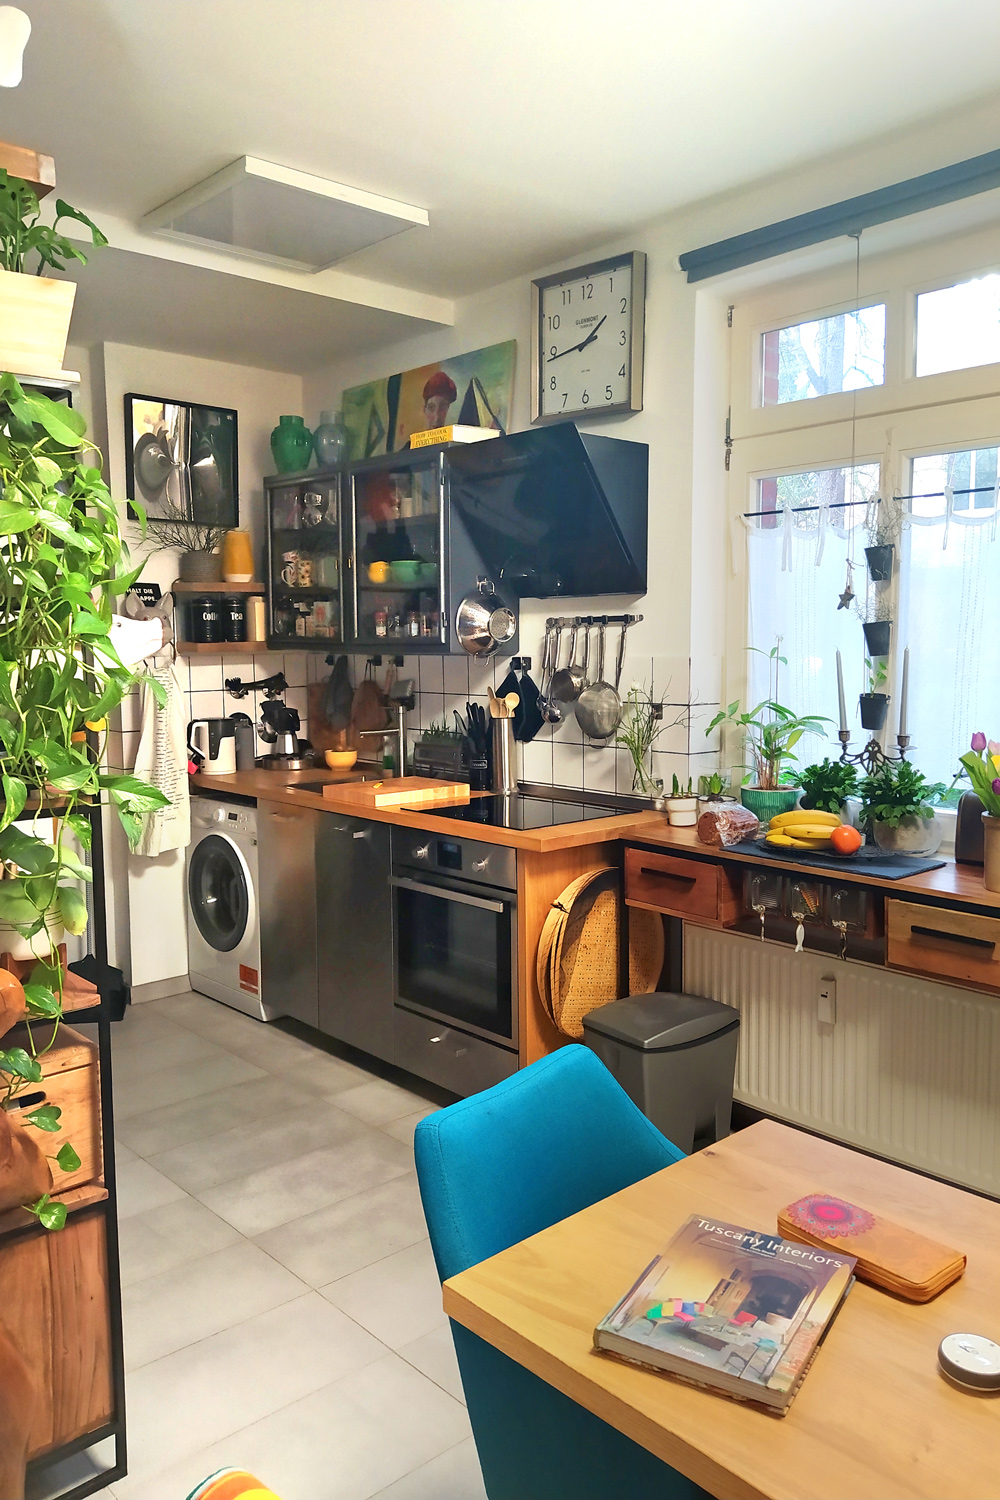 Eclectic Living auf 55 qm | Eine Homestory im Jugendstil-Altbau in Potsdam [unbeauftragte werbung da affiliate links und markennennung]